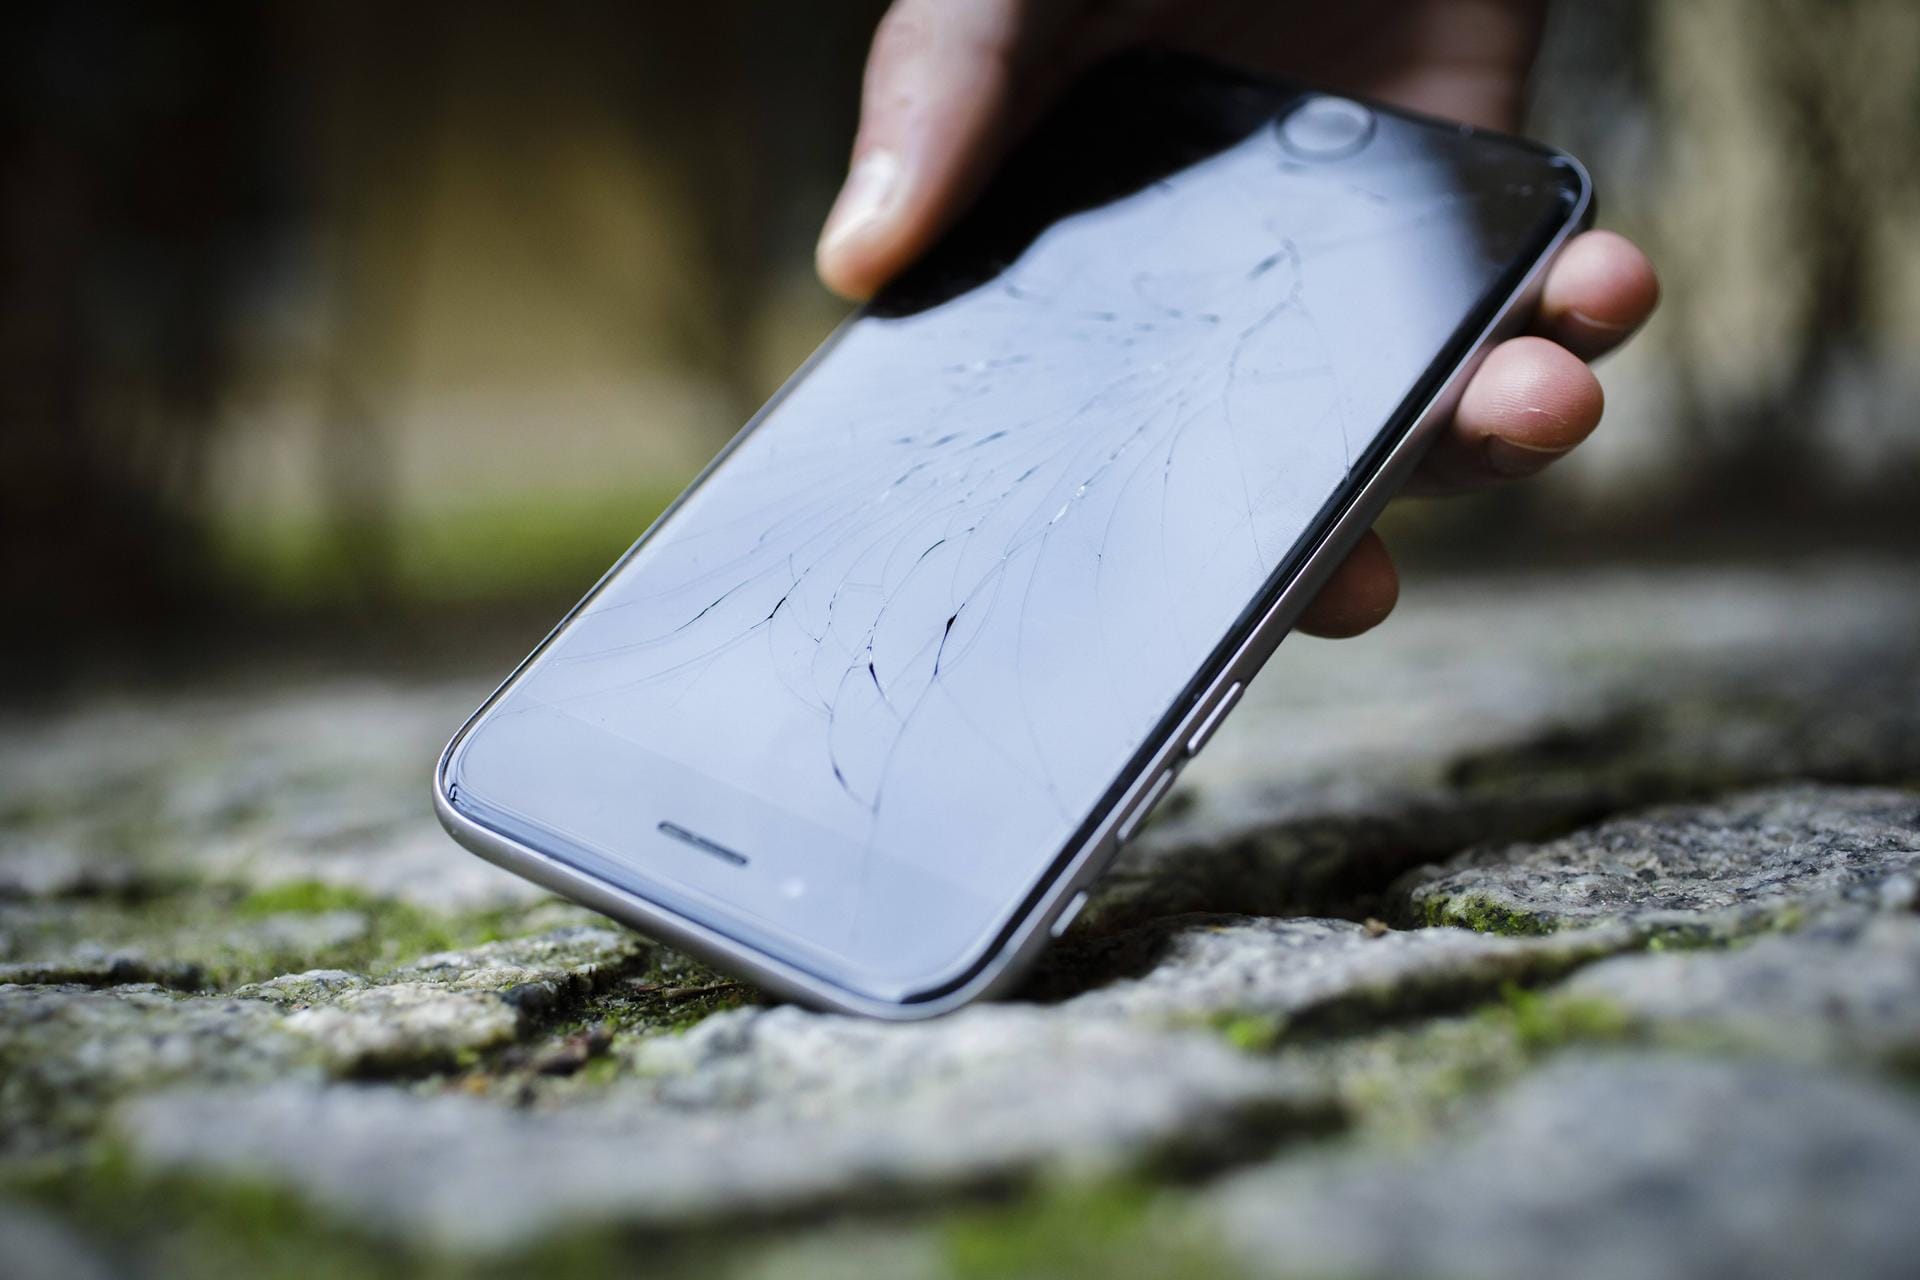 Das Apple Iphone mit zersplittertem Glas wird von der Strasse aufgehoben